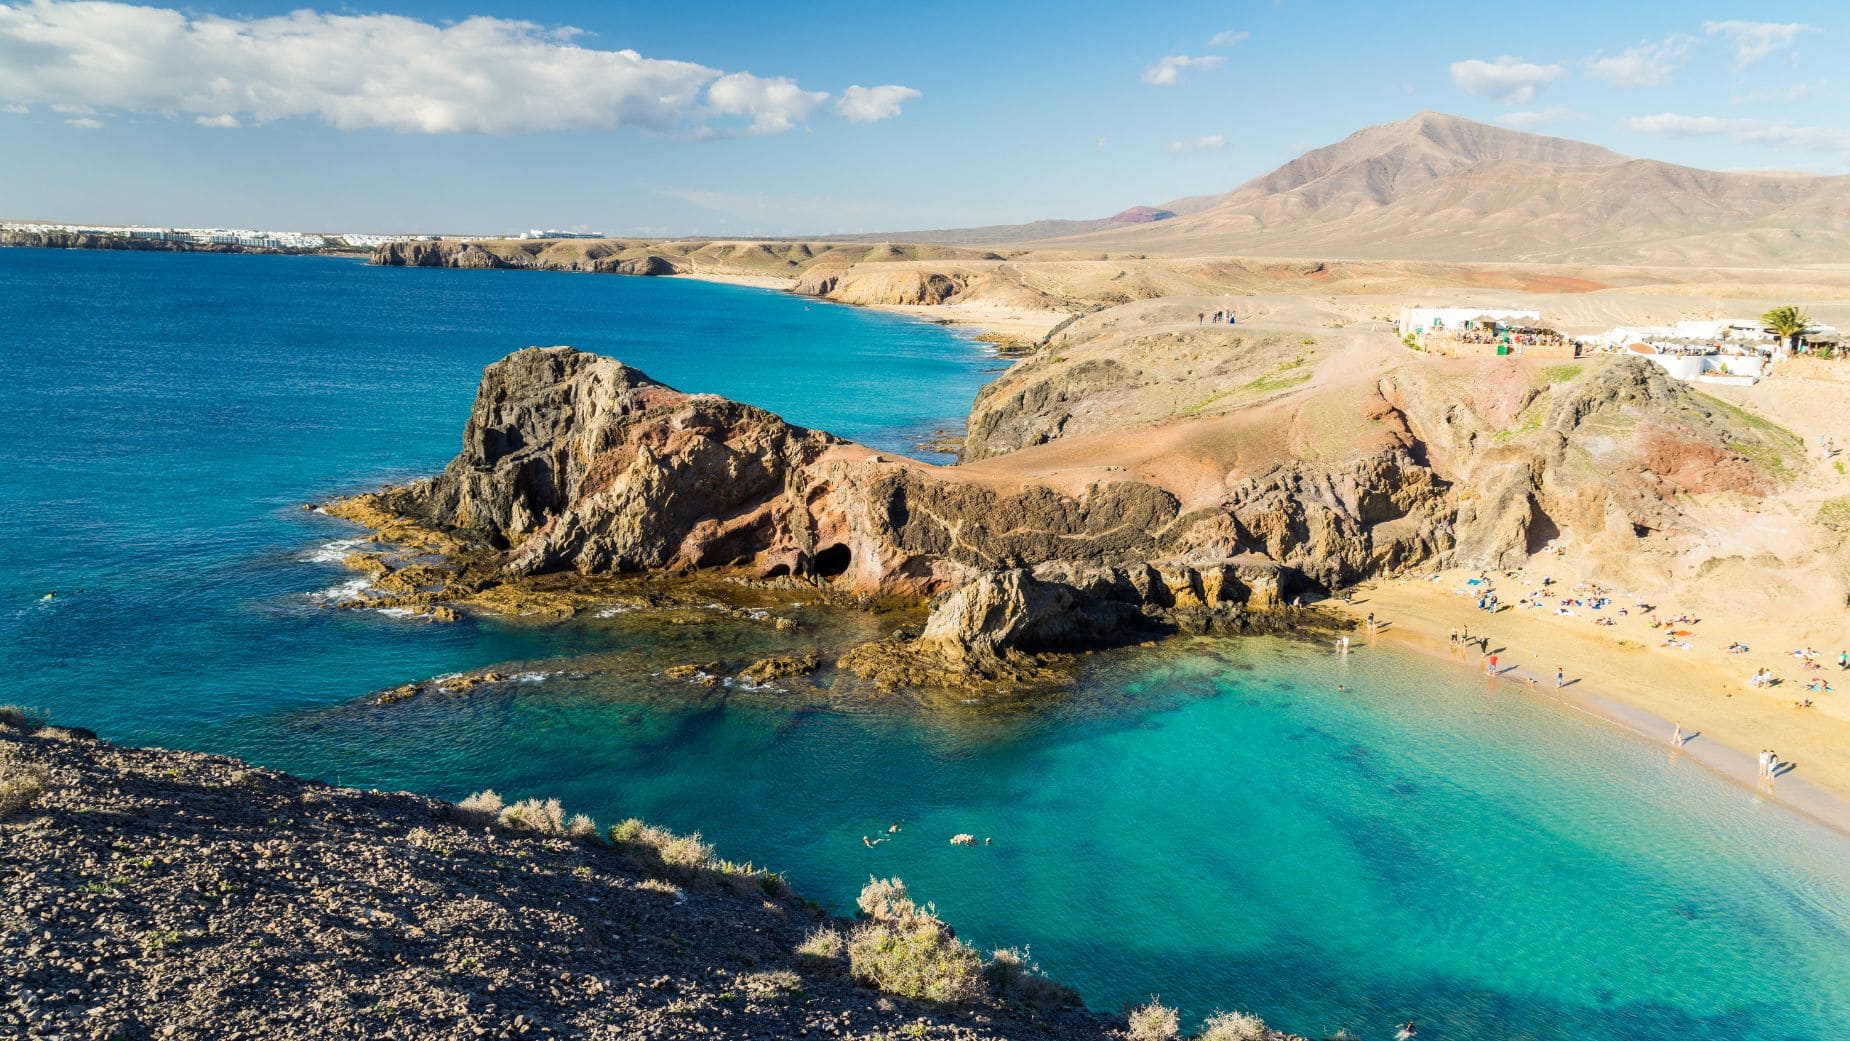 Viajes El Corte Inglés ofrece un viaje a Lanzarote a precio reducido